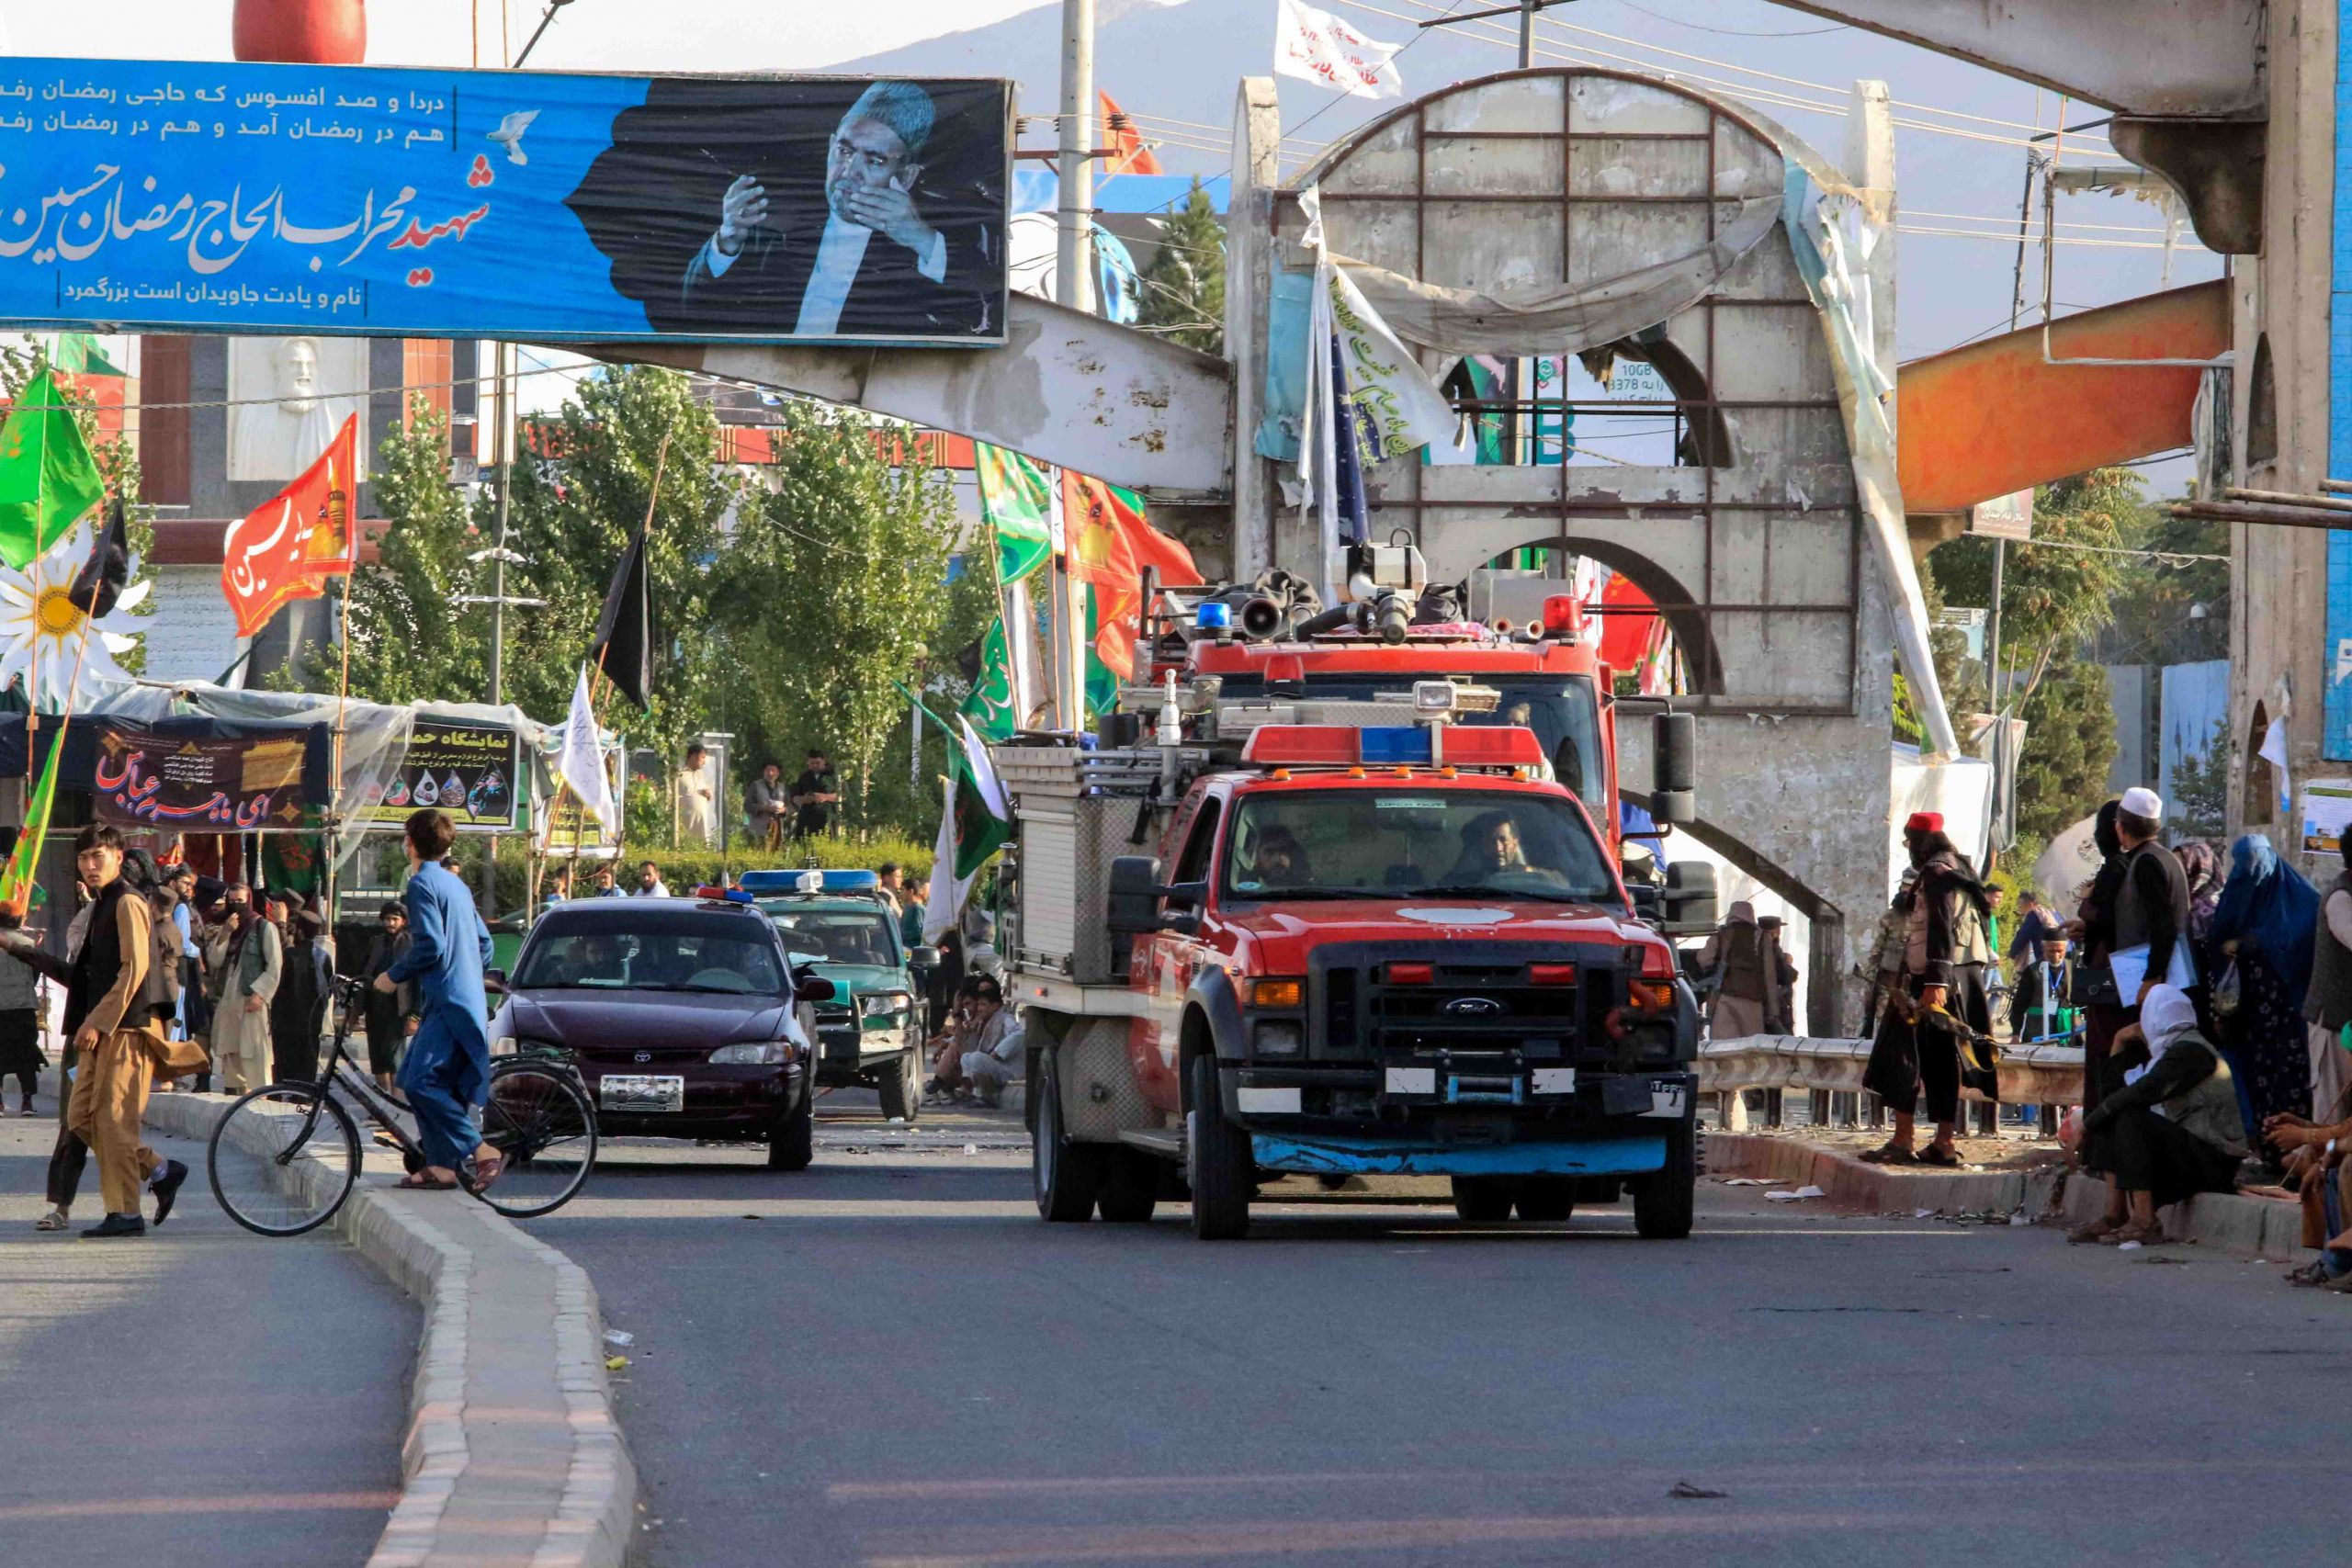 阿富汗首都喀布尔发生炸弹攻击 至少12死22伤